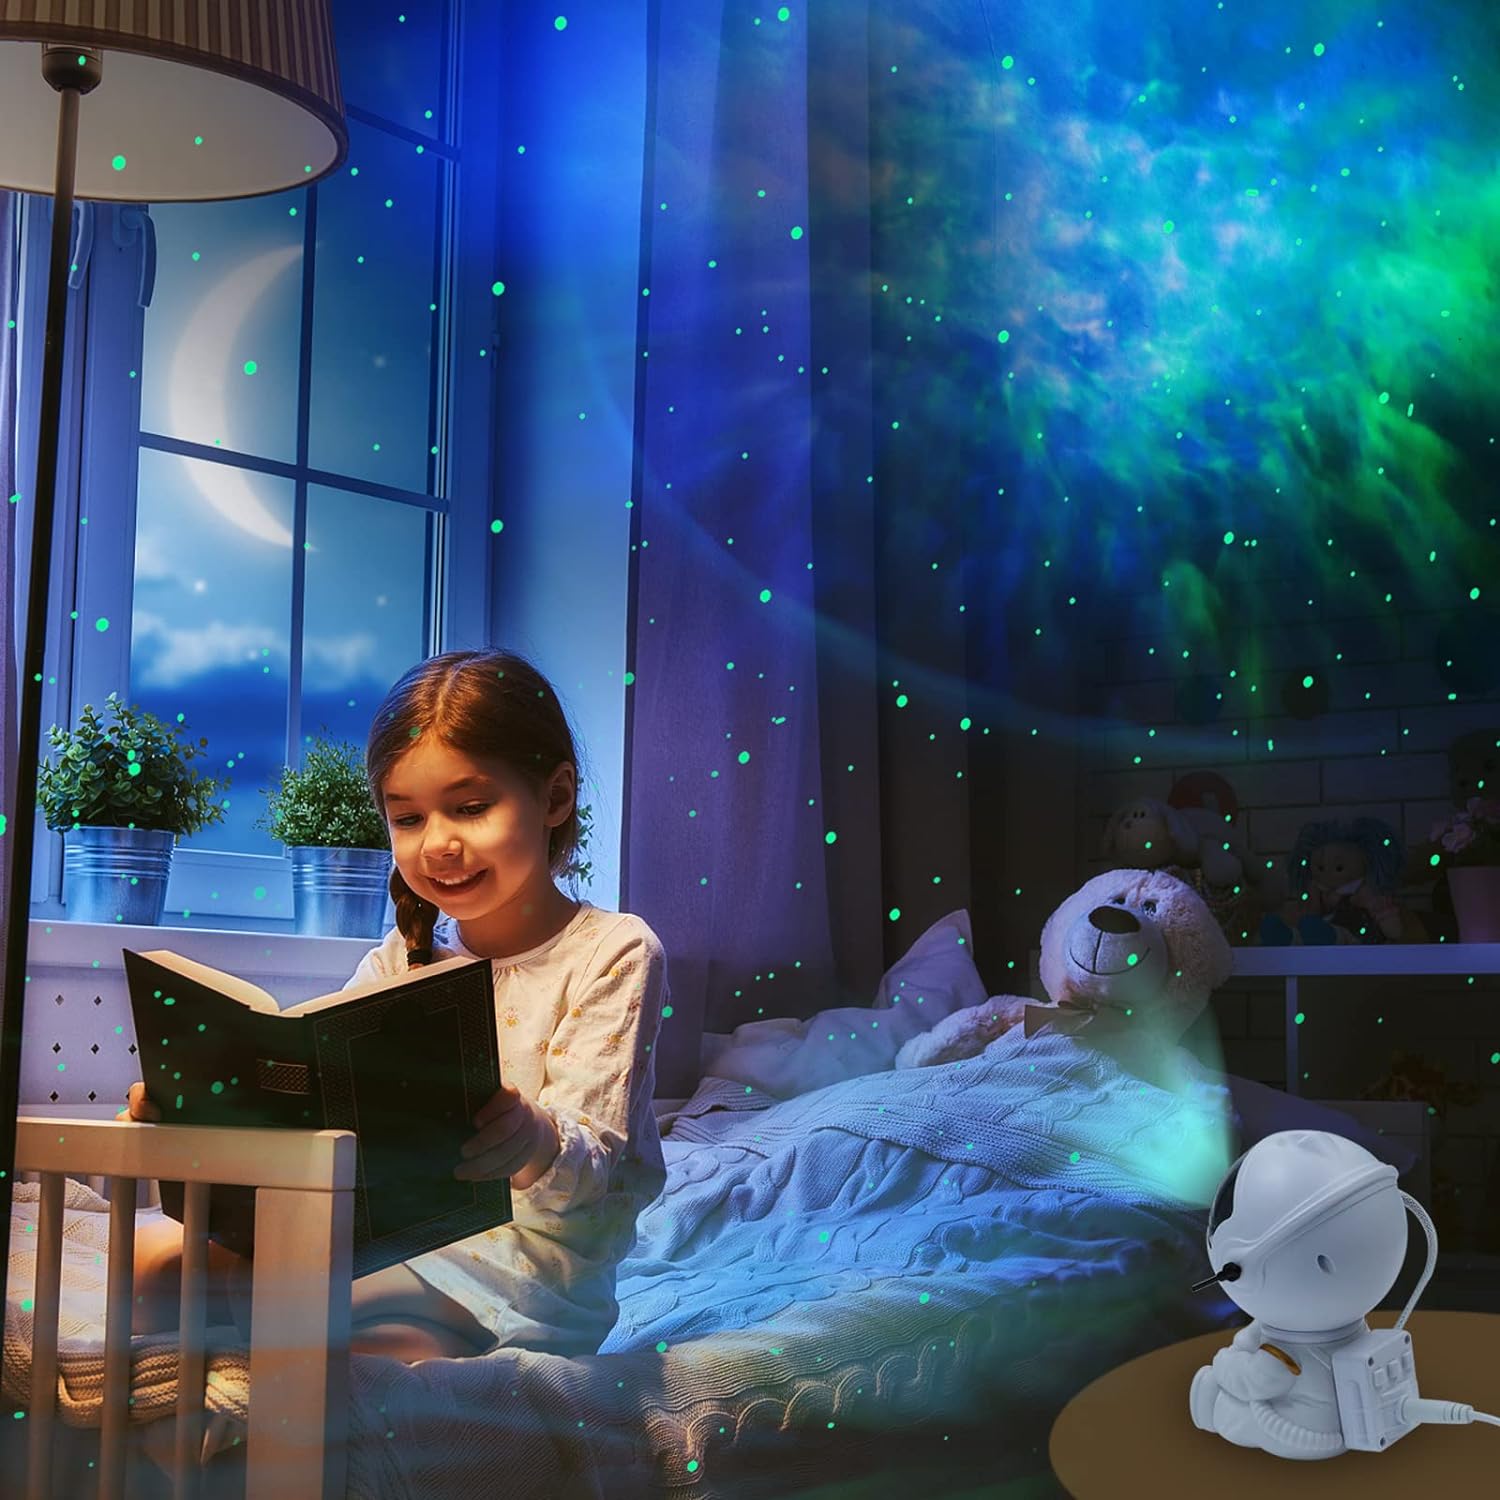 https://omnishop-col.com/products/proyector-de-astronauta-de-galaxia-proyector-de-estrellas-luces-nocturnas-de-galaxia-con-control-remoto-mini-proyector-de-astronauta-nebulosa-para-dormitorio-de-ninos-sala-de-juegos-techo-1